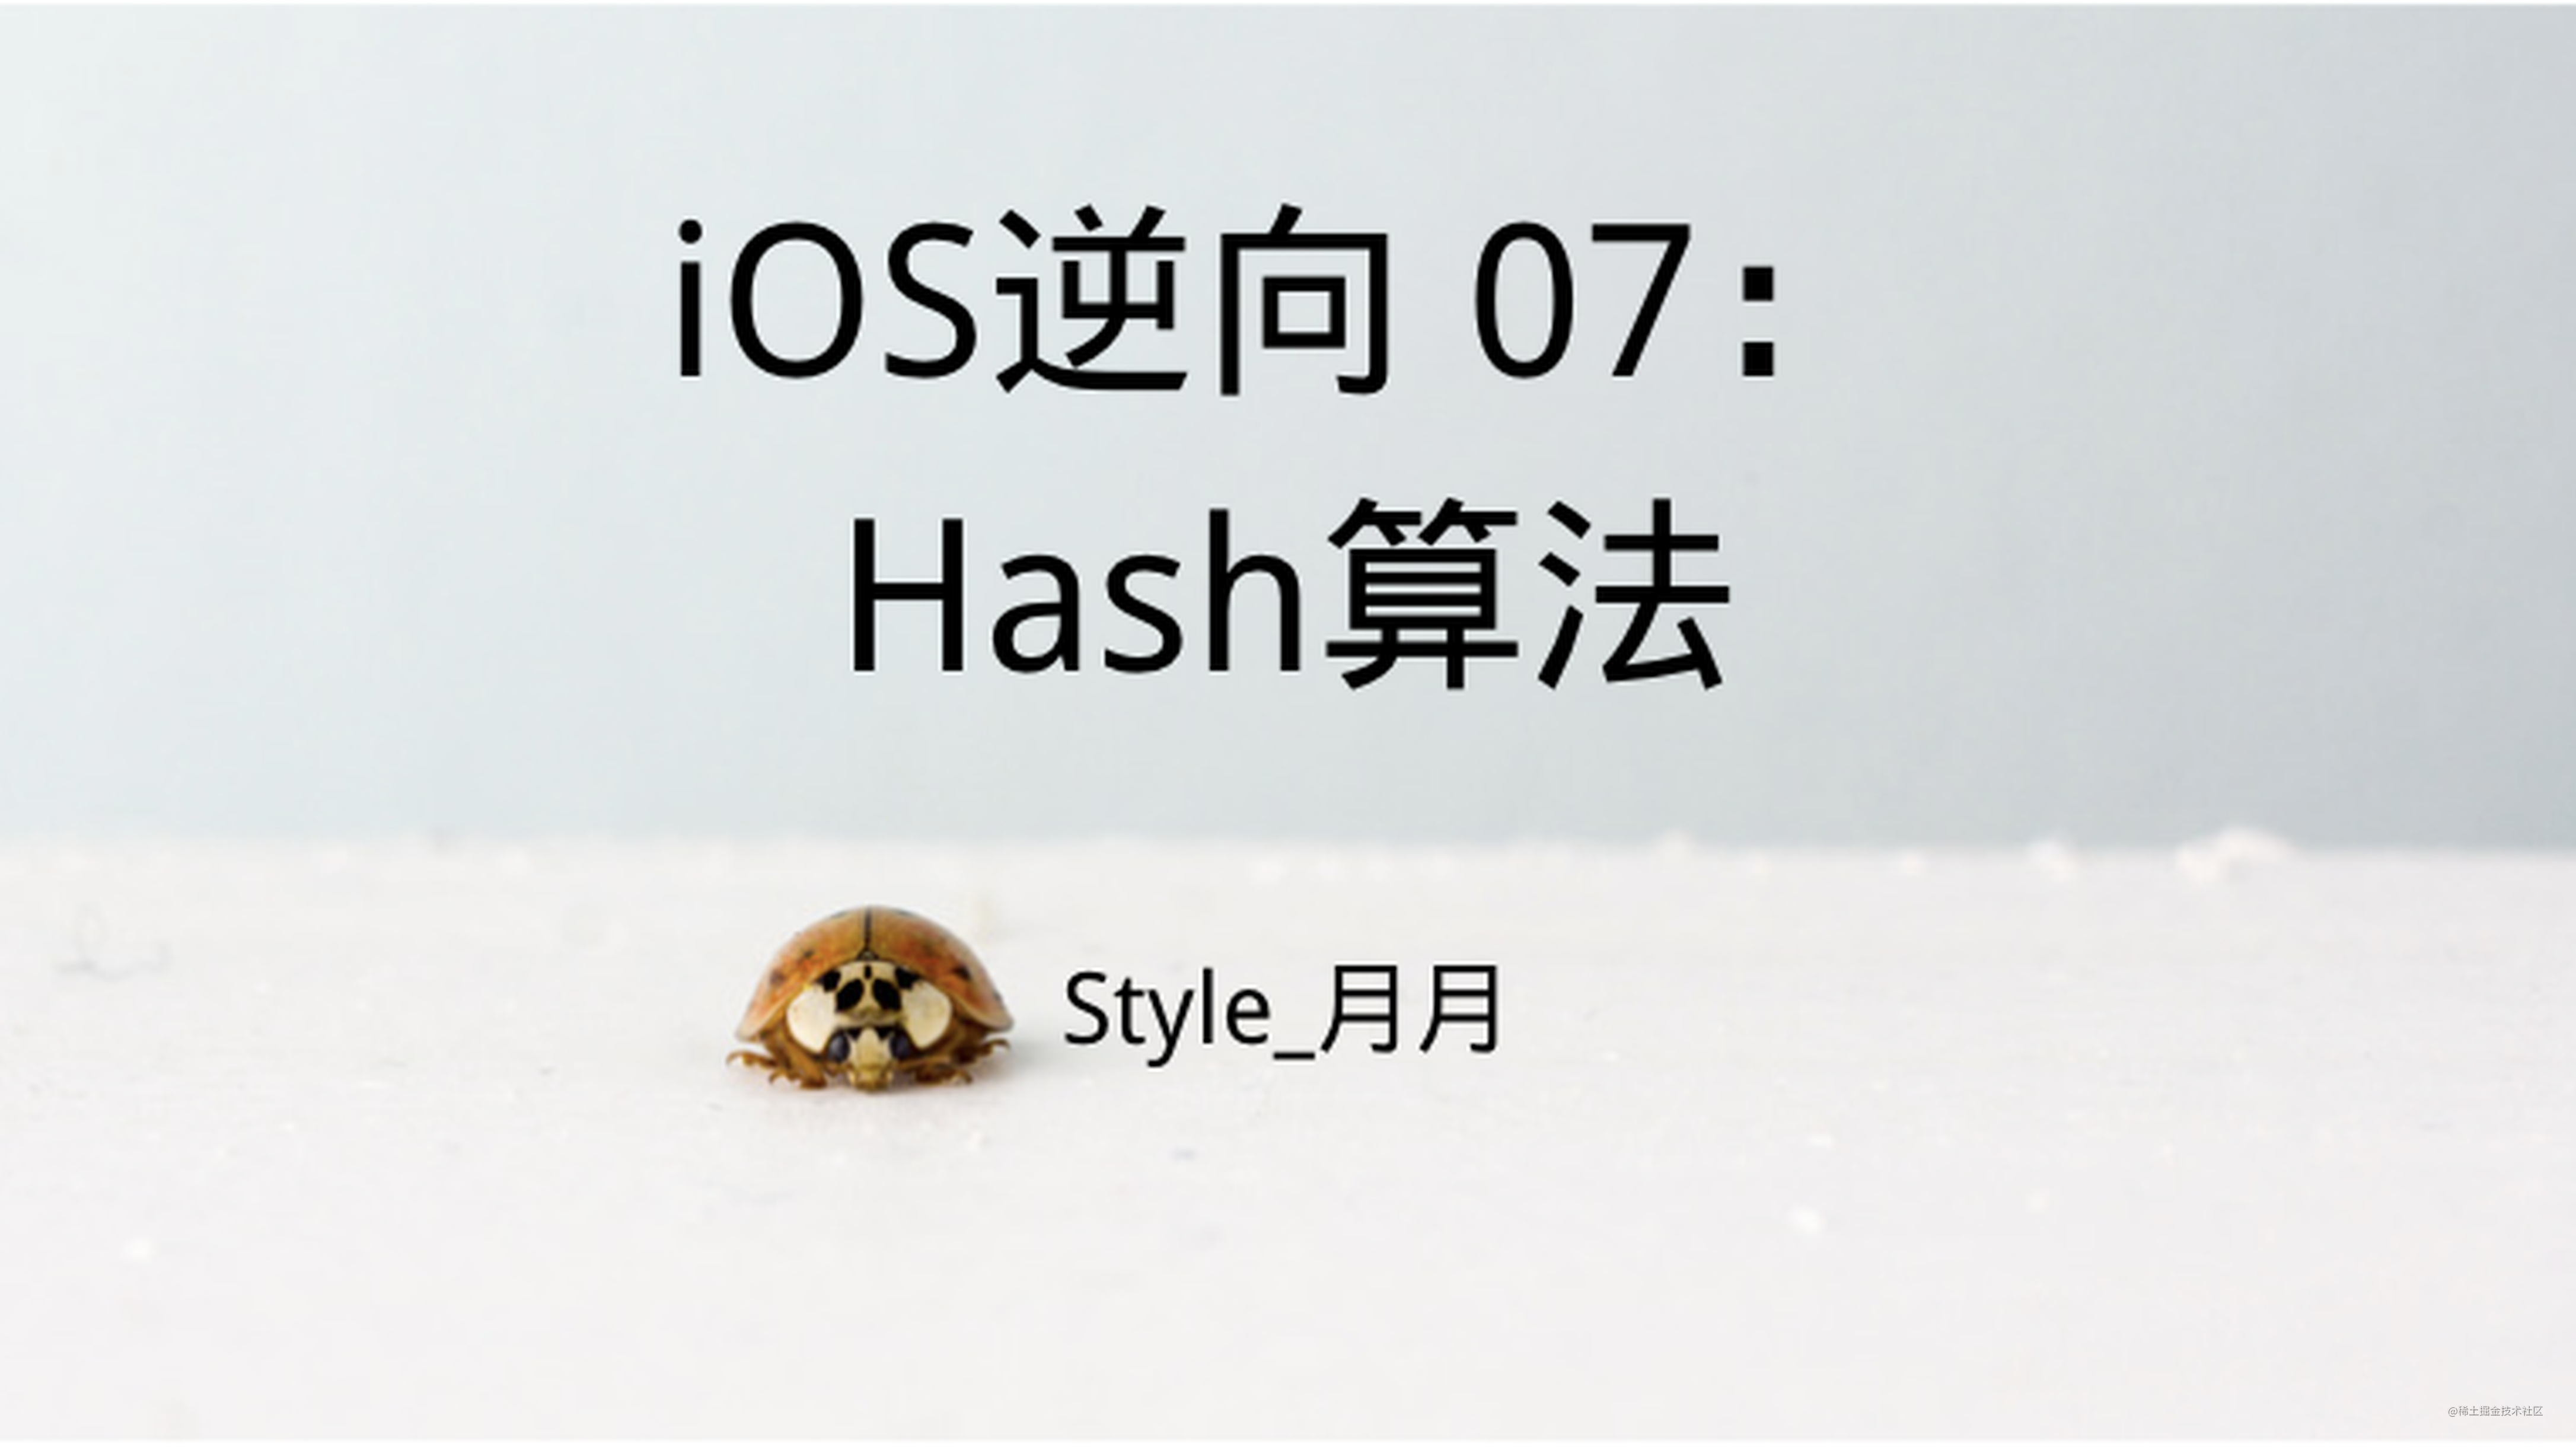 iOS逆向 07：Hash算法